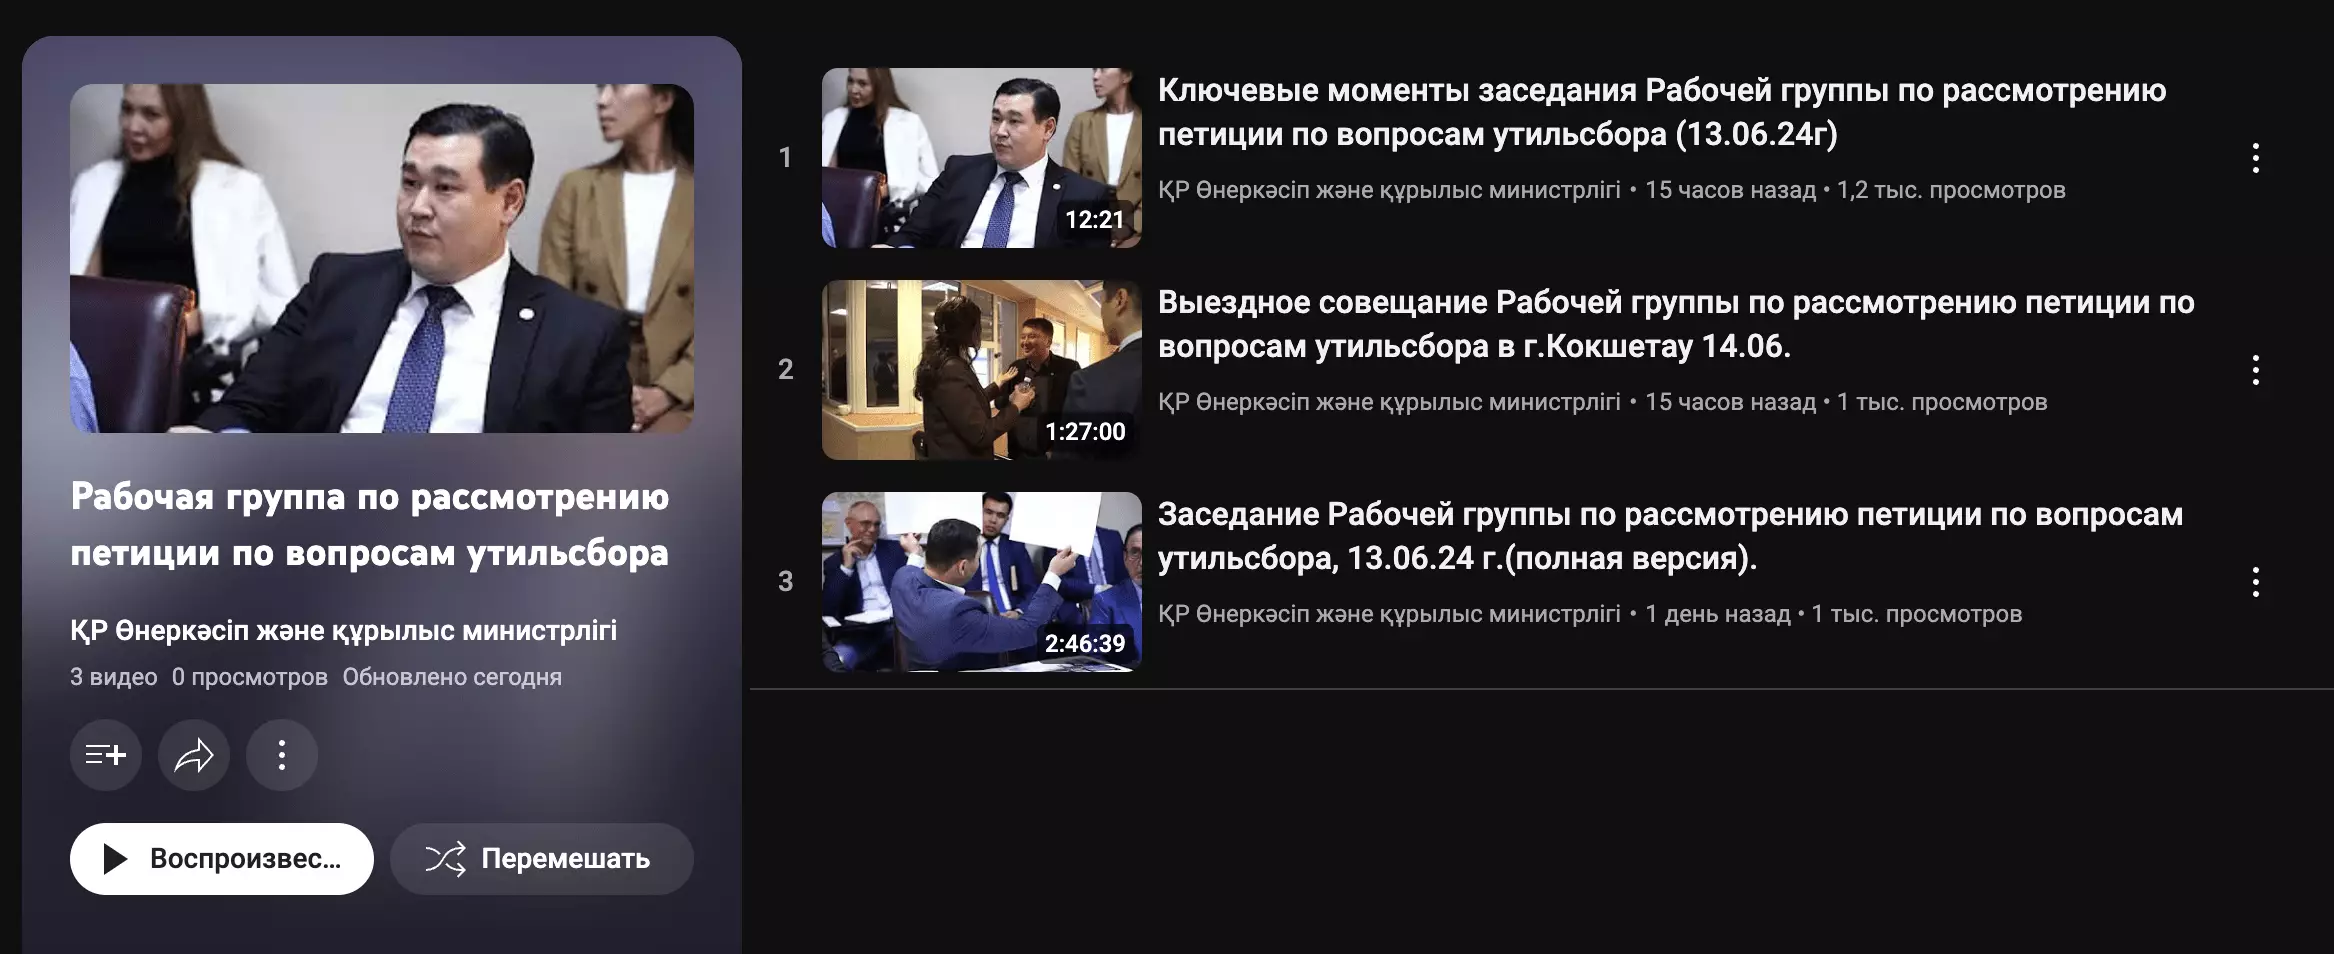 Минпромышленности после критики Бокаева решили загружать видео мероприятий по рассмотрению петиции против утильсбора